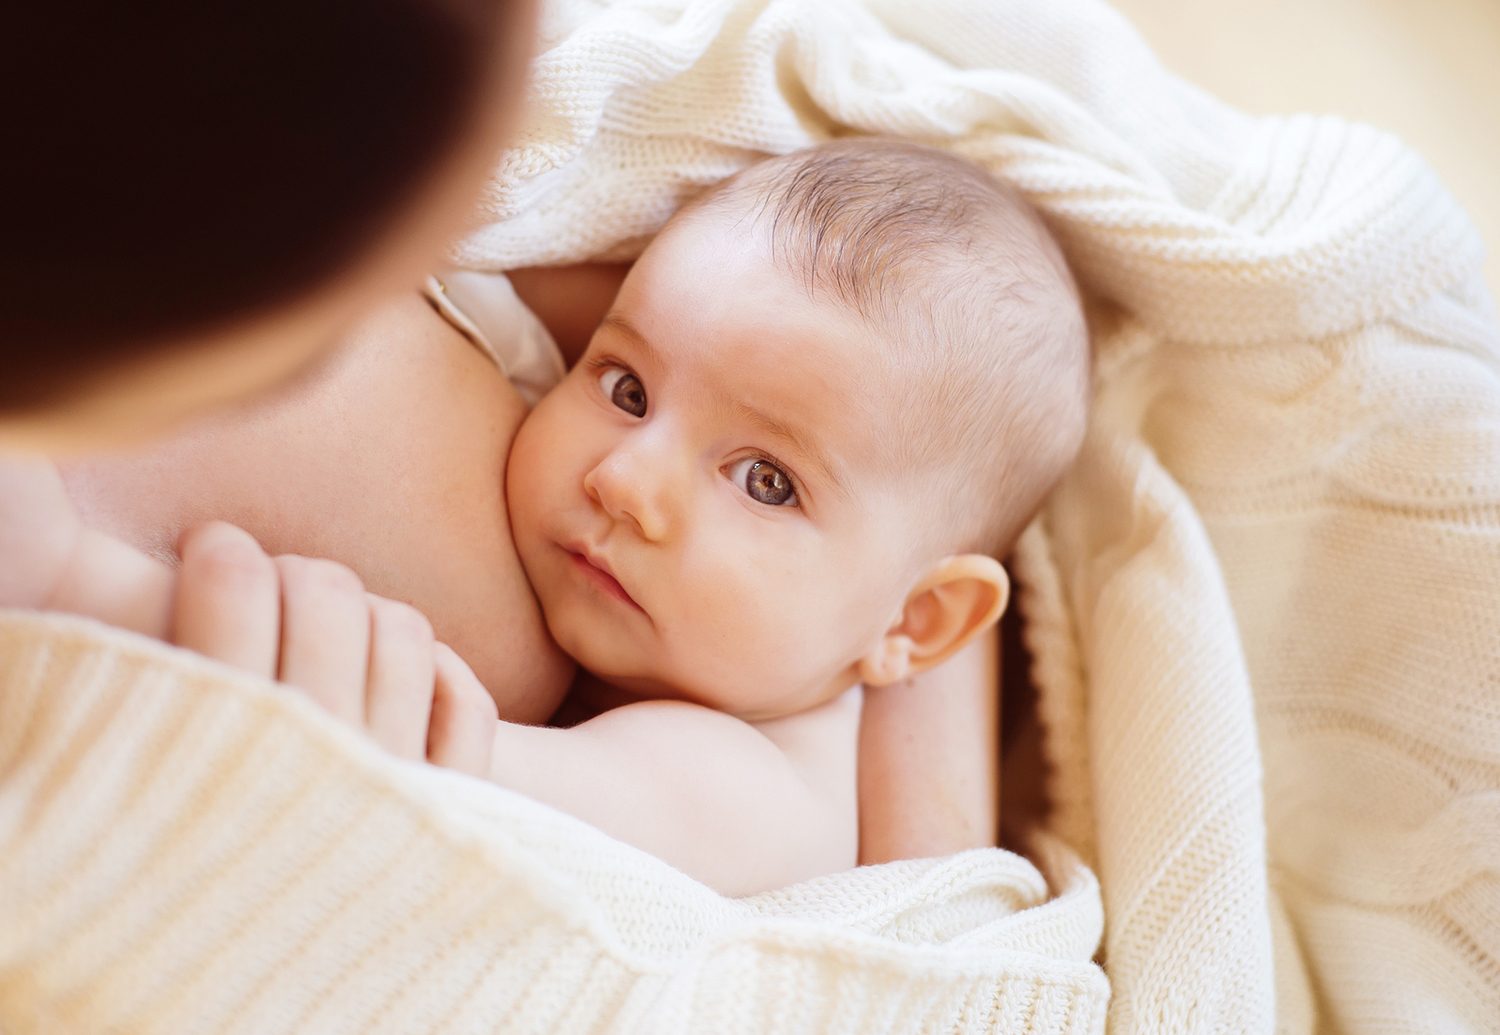 فوائد الرضاعة الطبيعية للام المصابة بالسكري